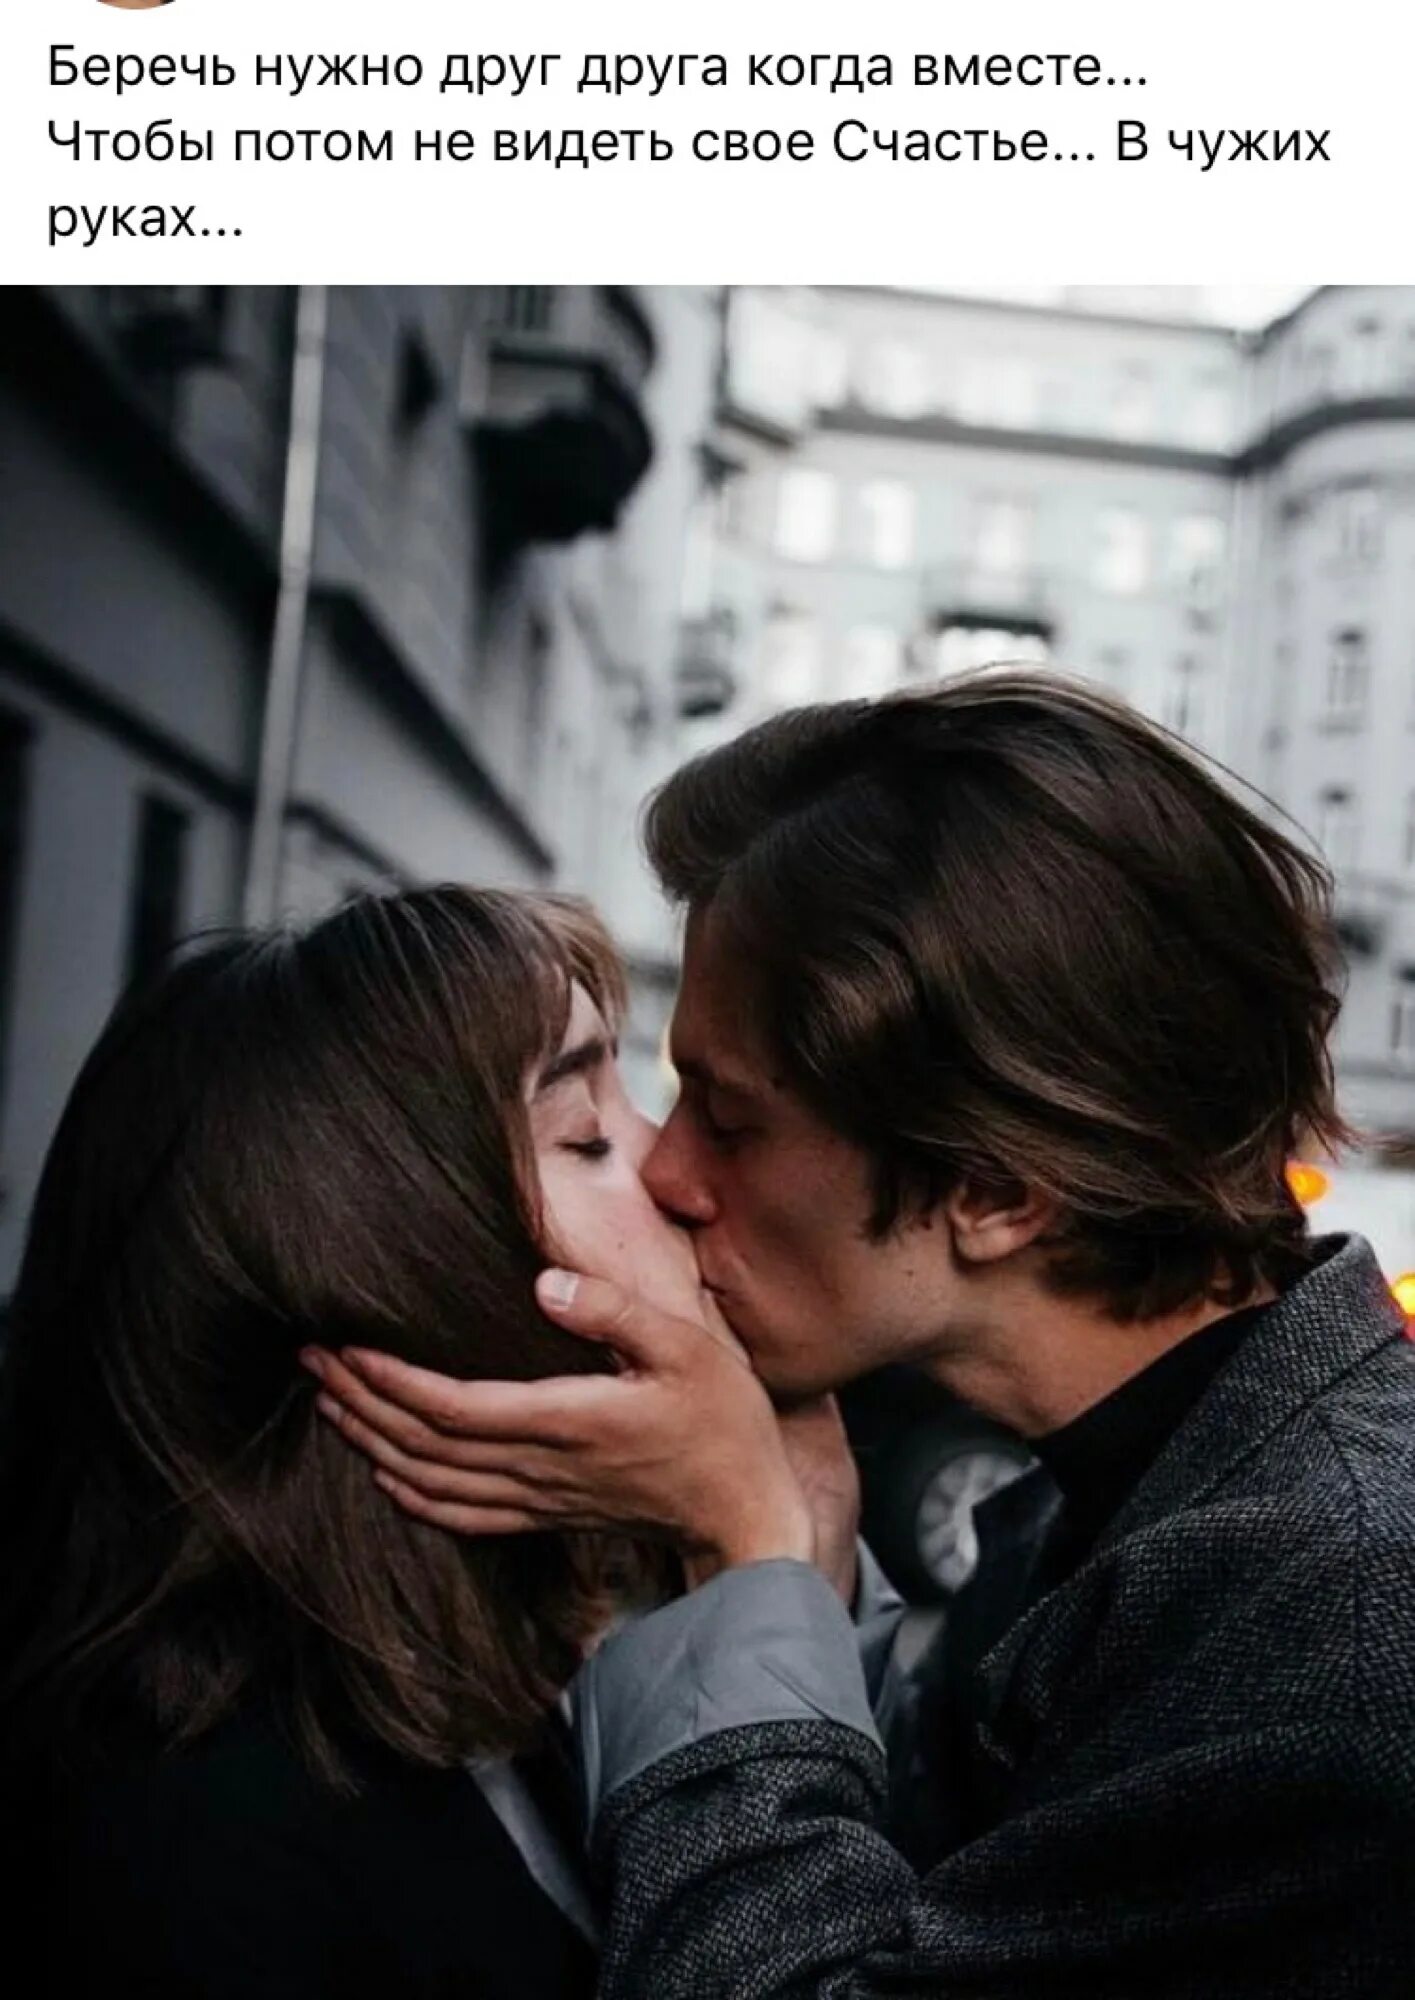 Можно ли целоваться языком. Первый поцелуй. Как правильно целоваться. КПК прпвильно целоваться?. Научите целоваться.